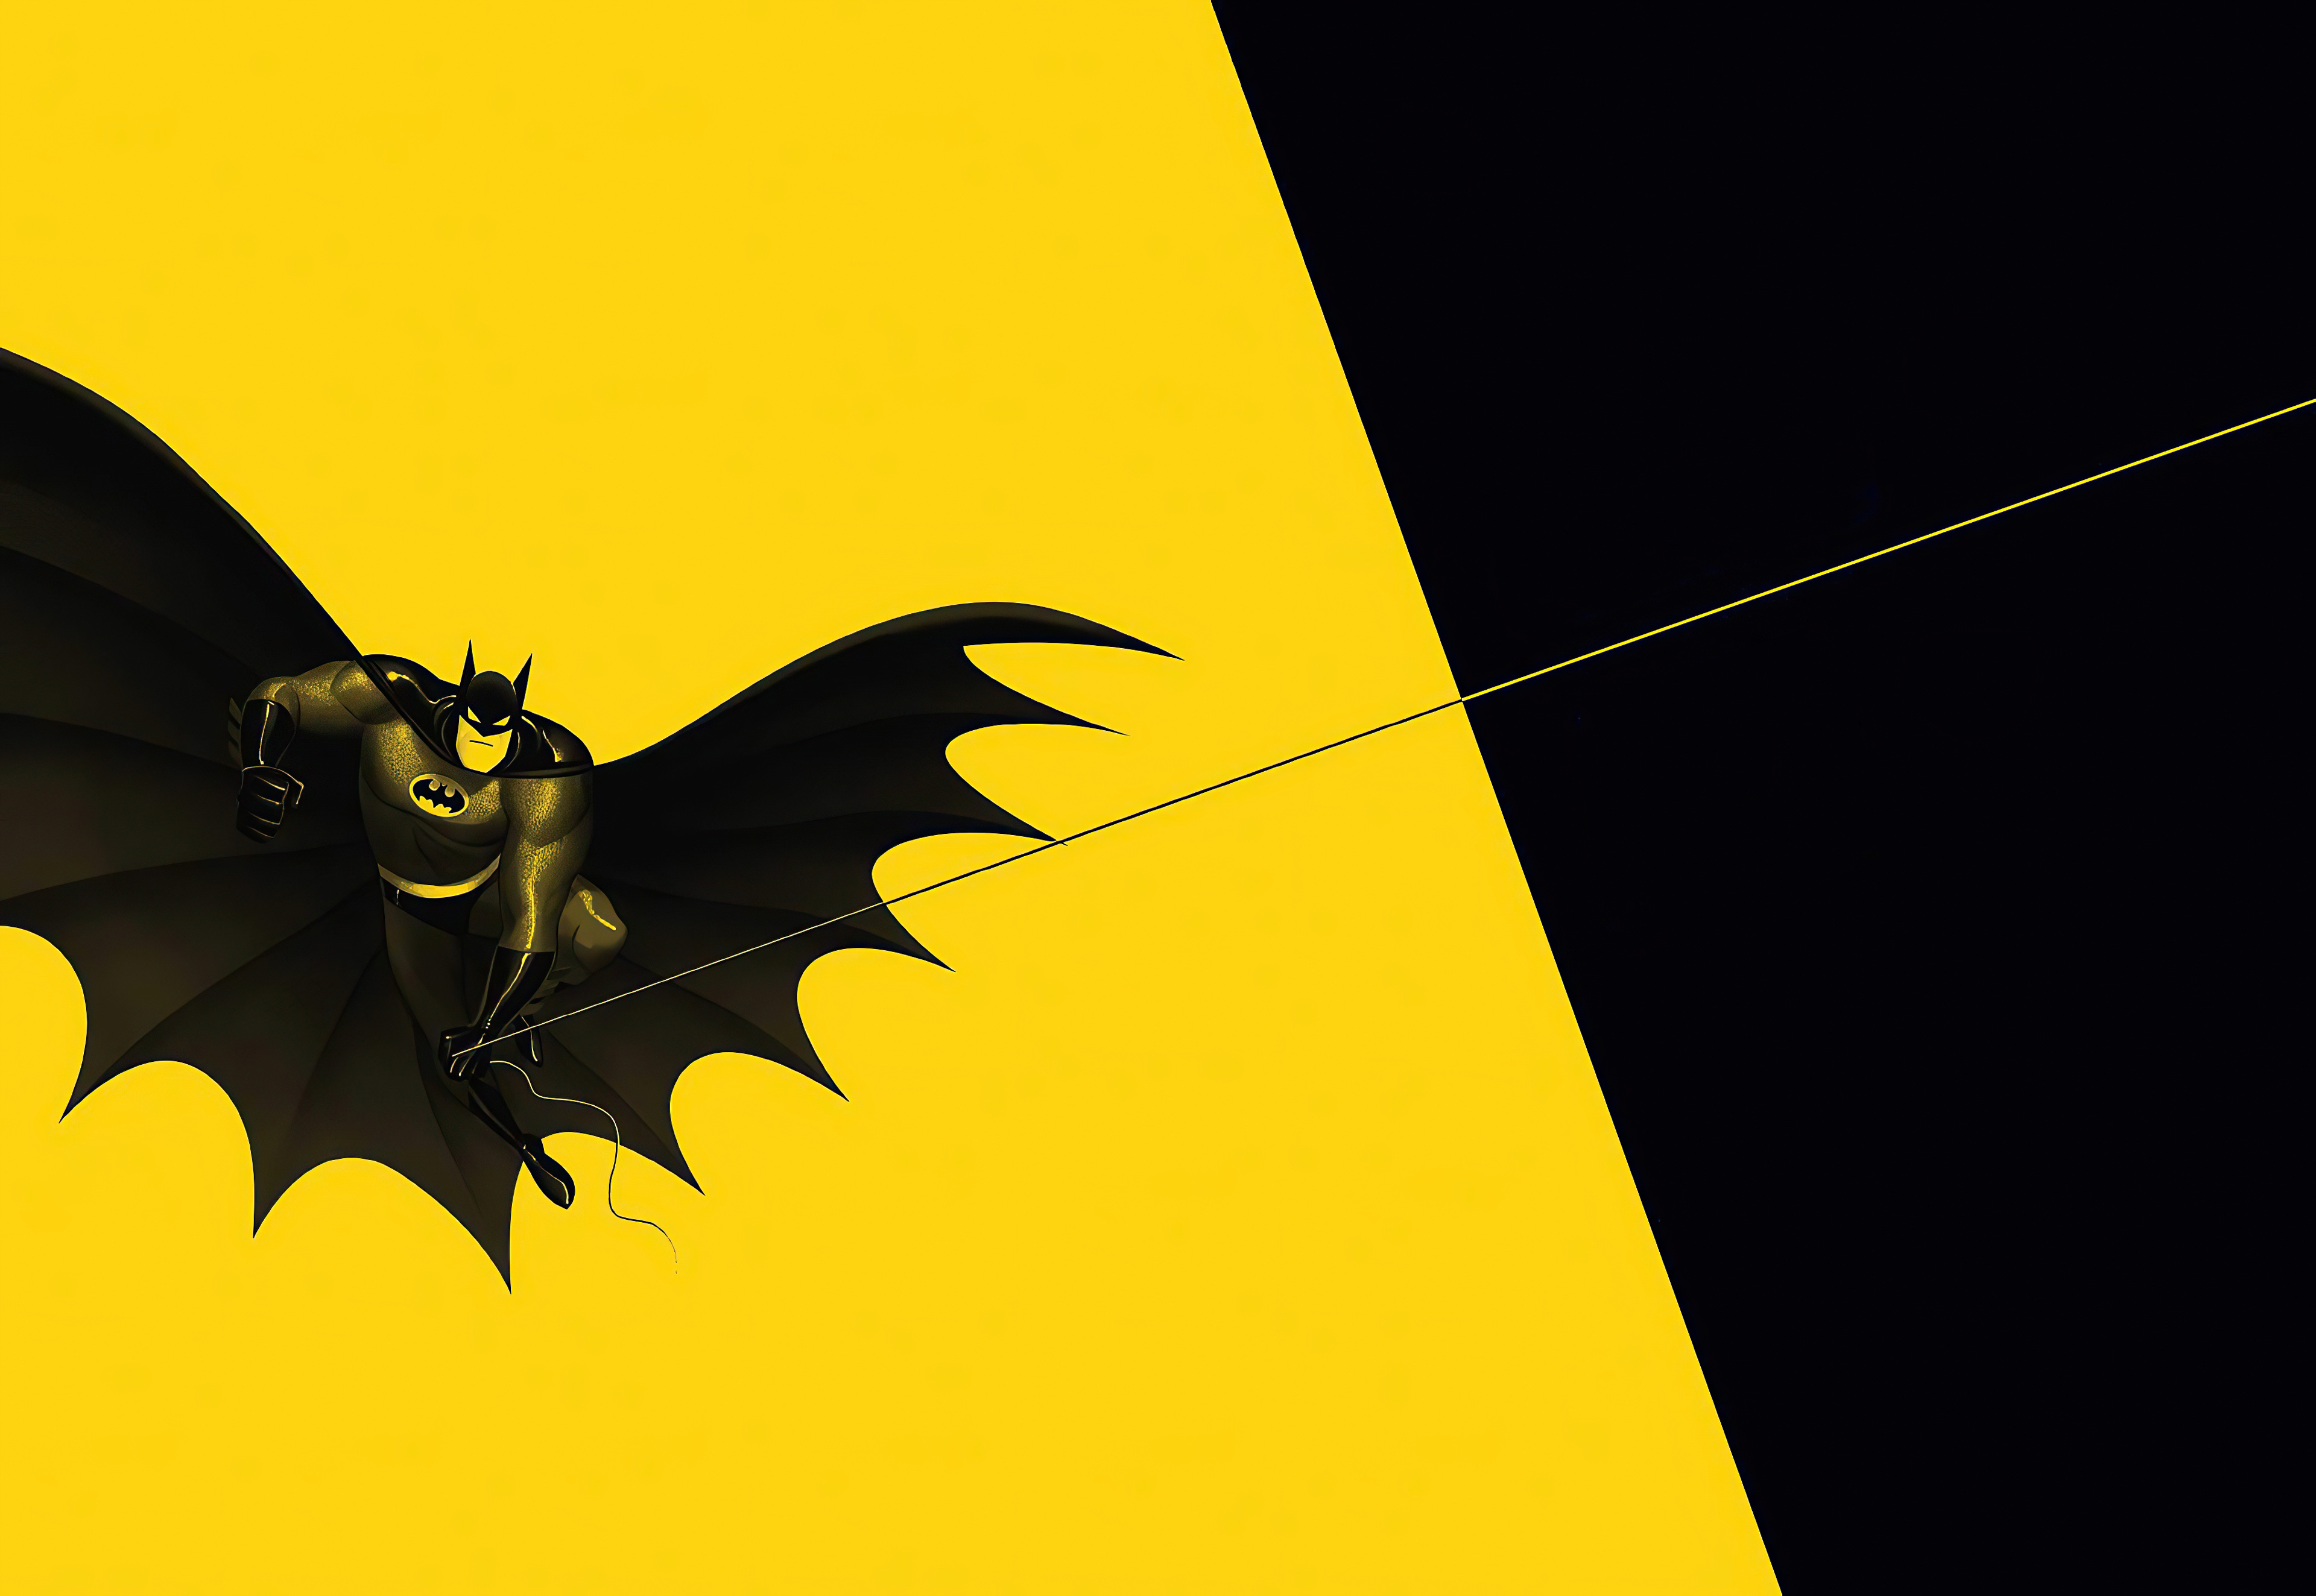 Bạn là fan của Batman và yêu thích màu vàng? Ảnh nền Batman màu vàng là sự lựa chọn hoàn hảo cho bạn! Hình nền sẽ mang lại cảm giác mạnh mẽ của siêu anh hùng đến cho thiết bị của bạn.